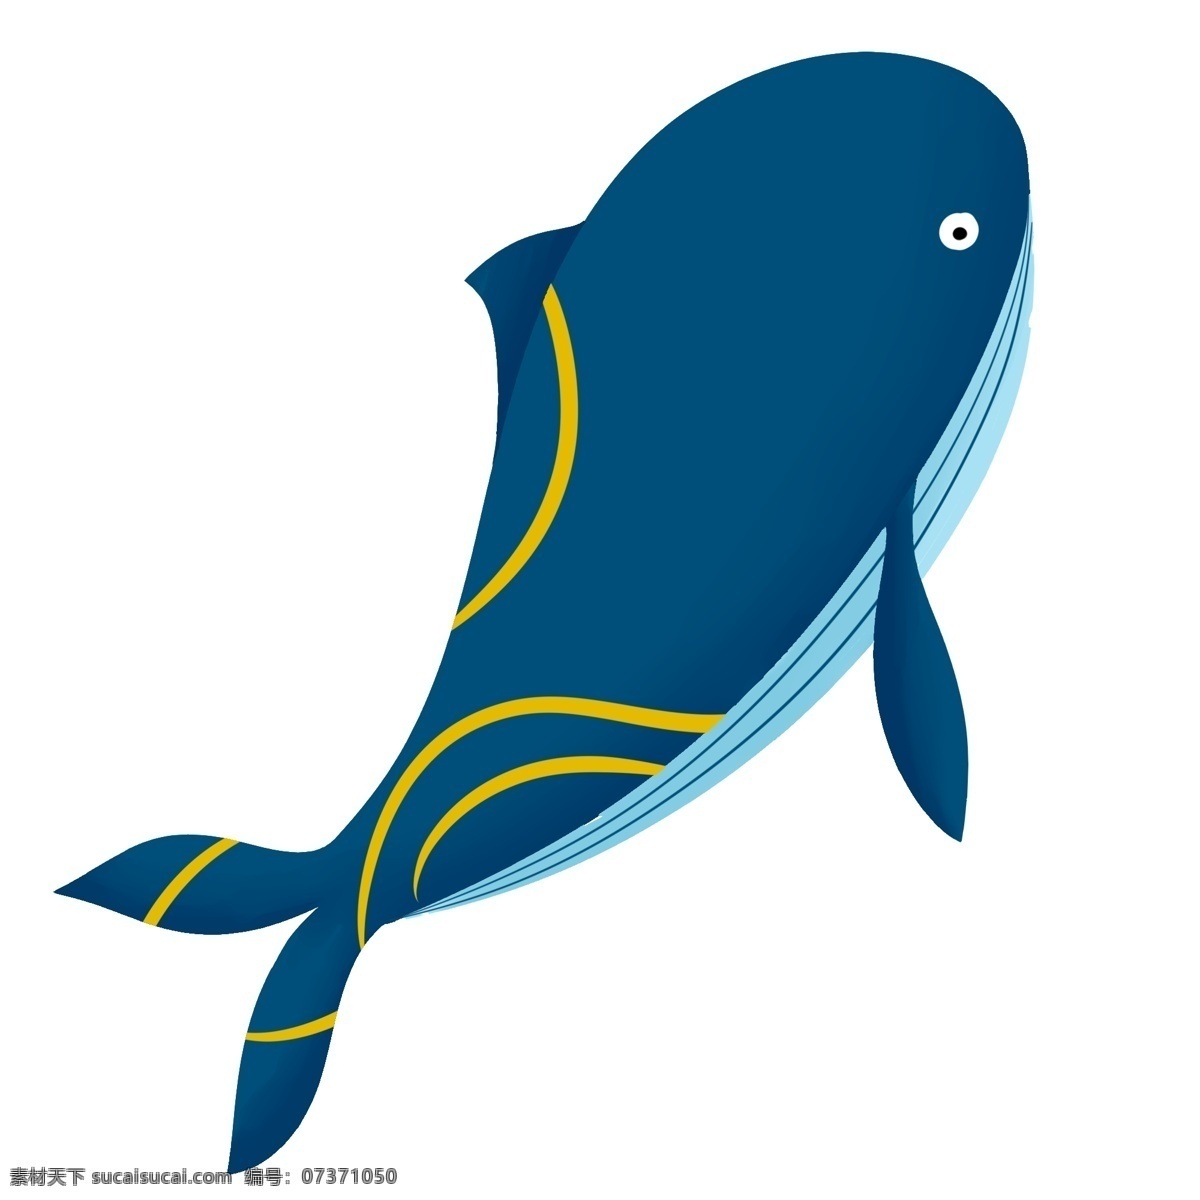 可爱 小 动物 手绘 创意 鲸鱼 黄色条纹 创意动物 可爱小动物 手绘创意鲸鱼 蓝色鲸鱼 海洋生物 生物 手绘鲸鱼